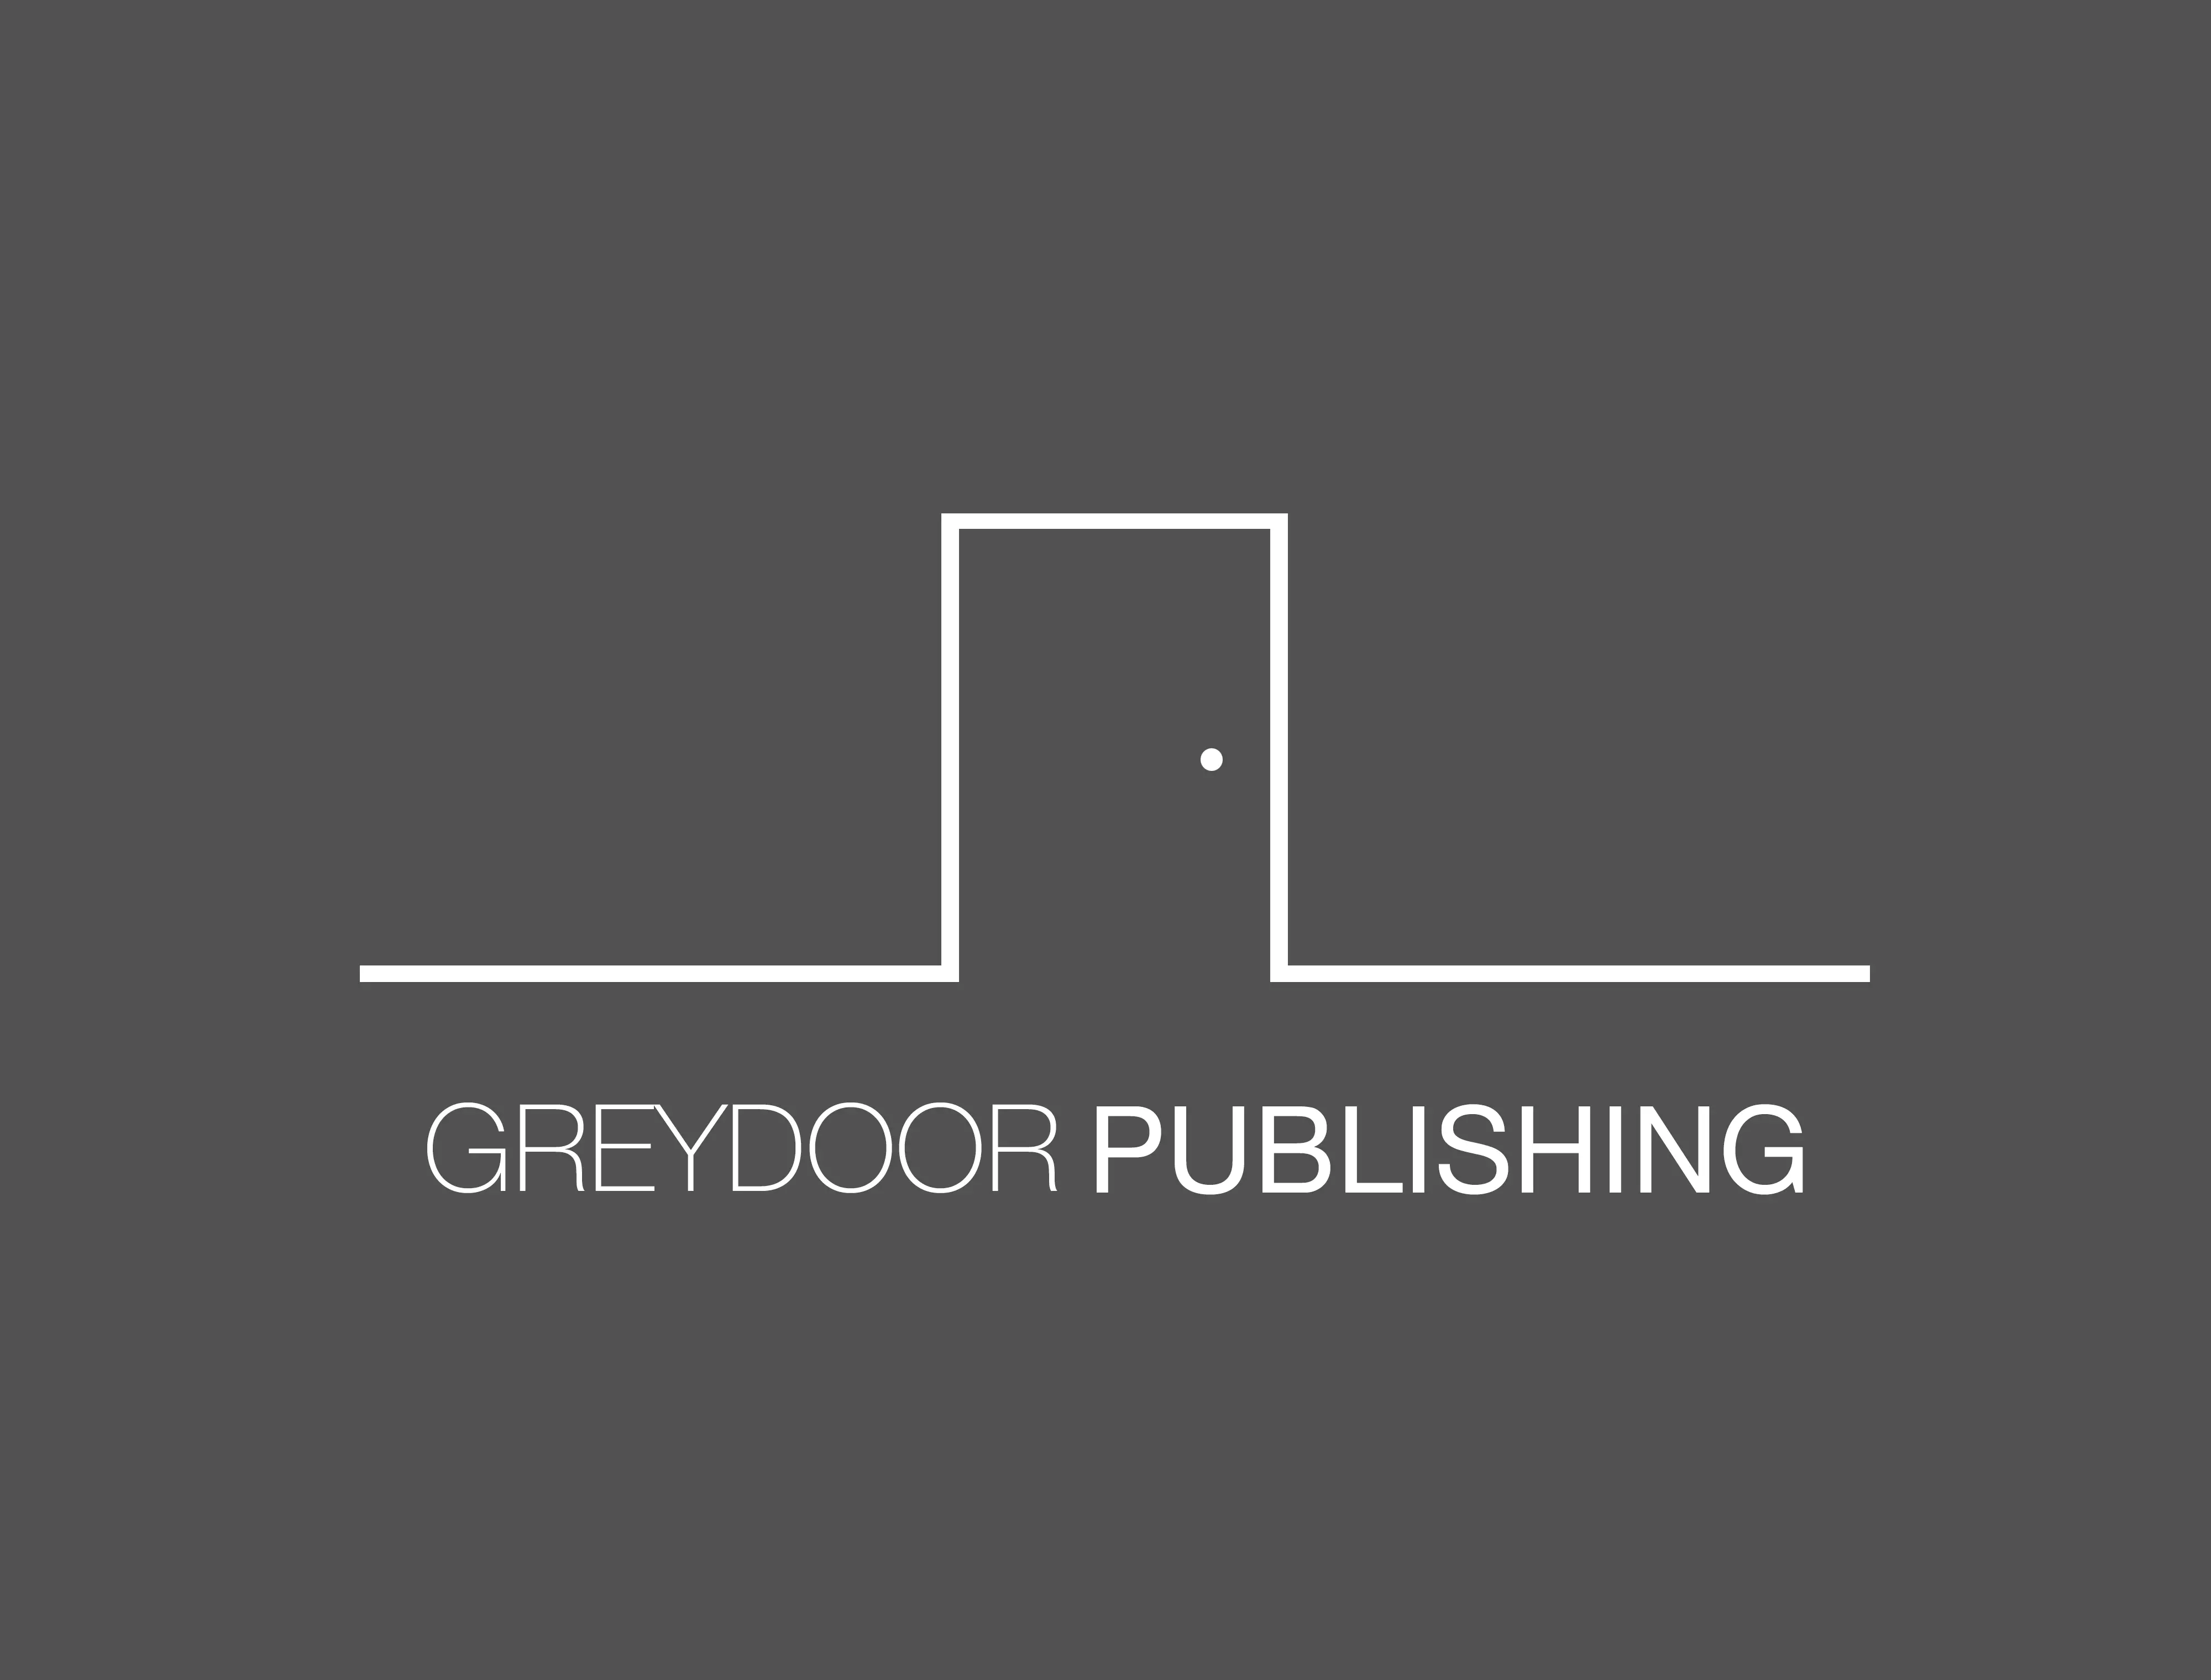 Greydoor Publishing - logo - jamcreative.agency .jpg